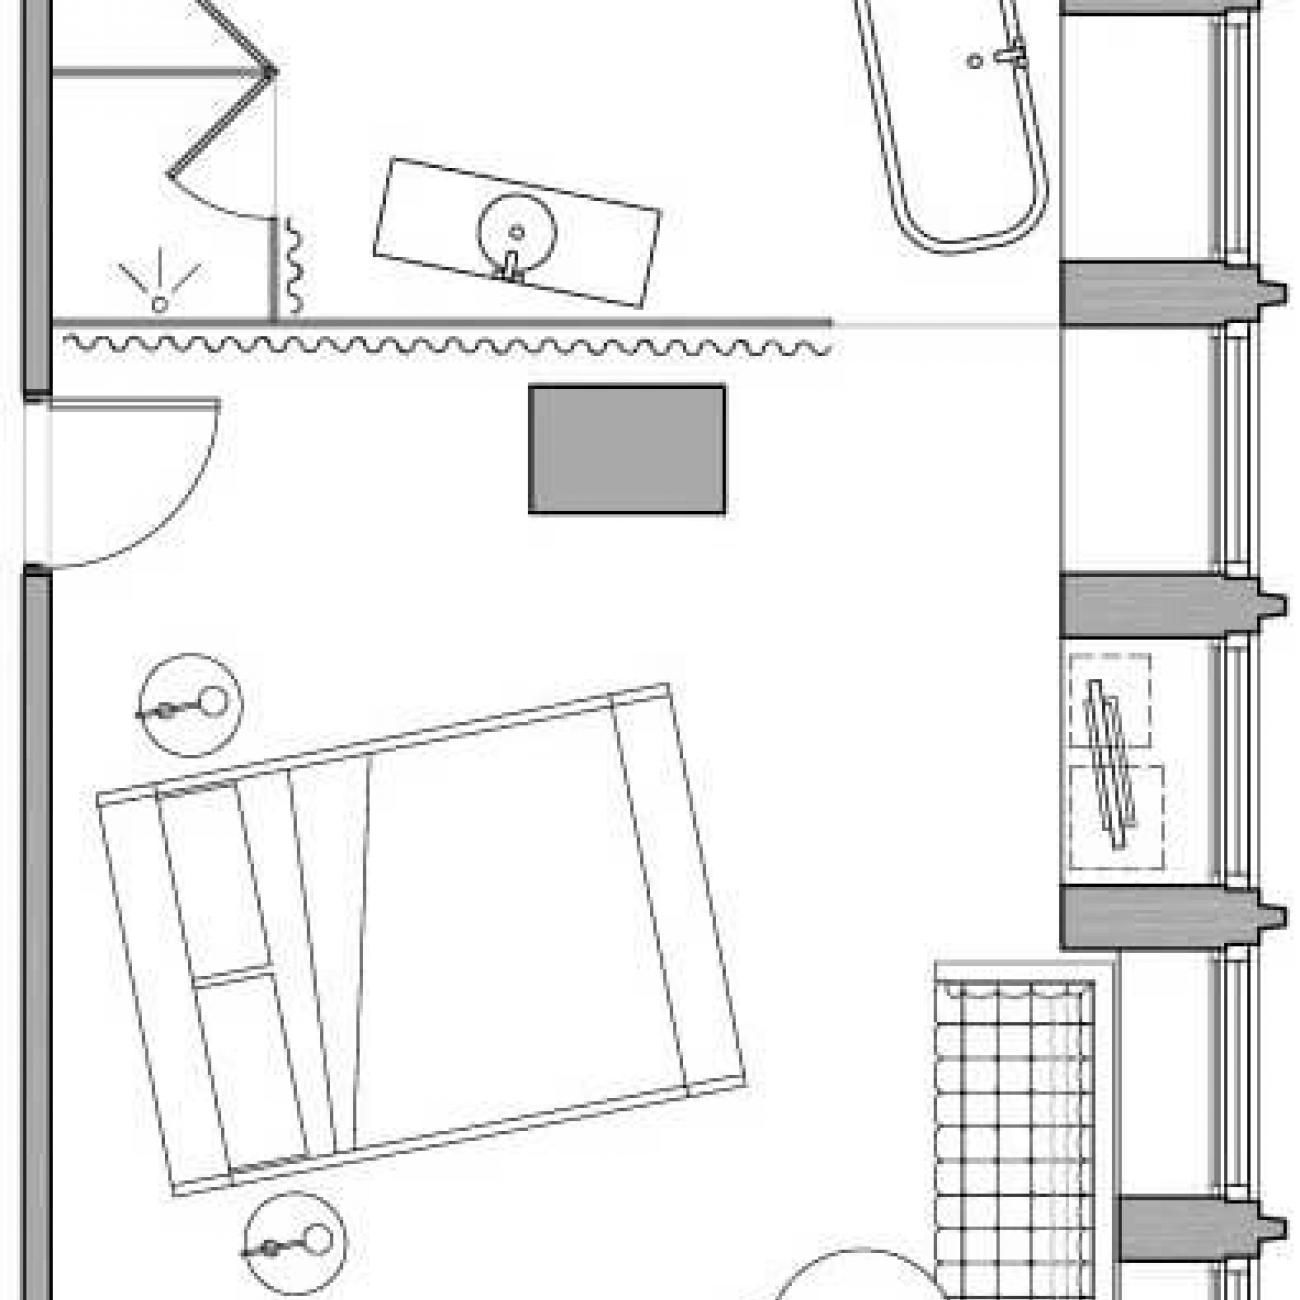 Sanderson deluxe hotel room floor plan